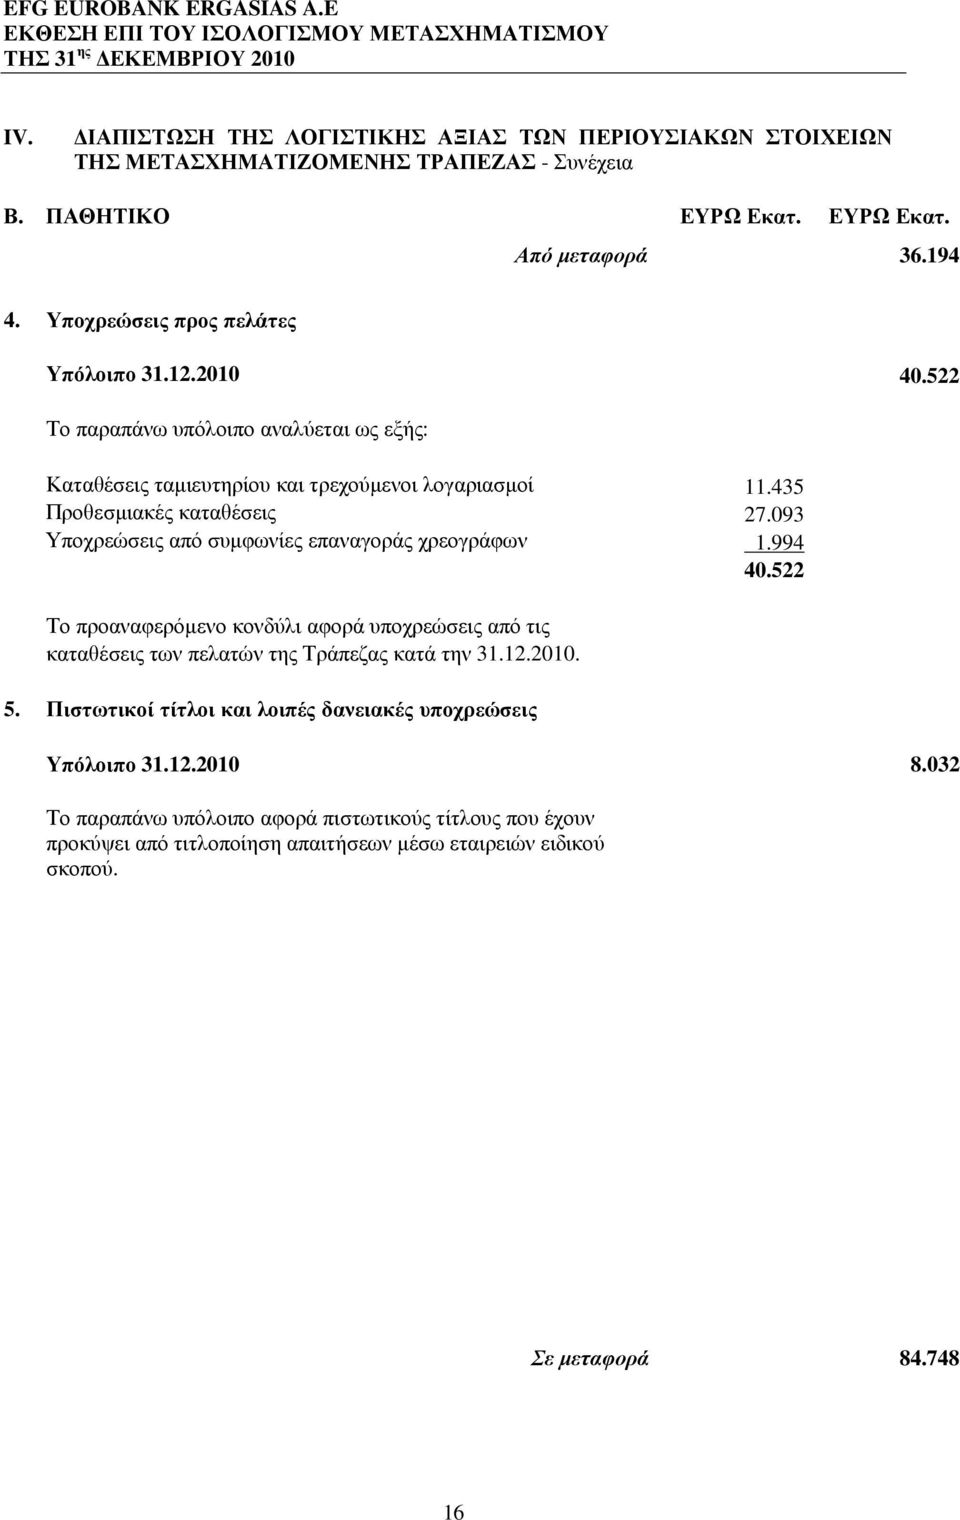 093 Υποχρεώσεις από συµφωνίες επαναγοράς χρεογράφων 1.994 40.522 Το προαναφερόµενο κονδύλι αφορά υποχρεώσεις από τις καταθέσεις των πελατών της Τράπεζας κατά την 31.12.2010. 5.